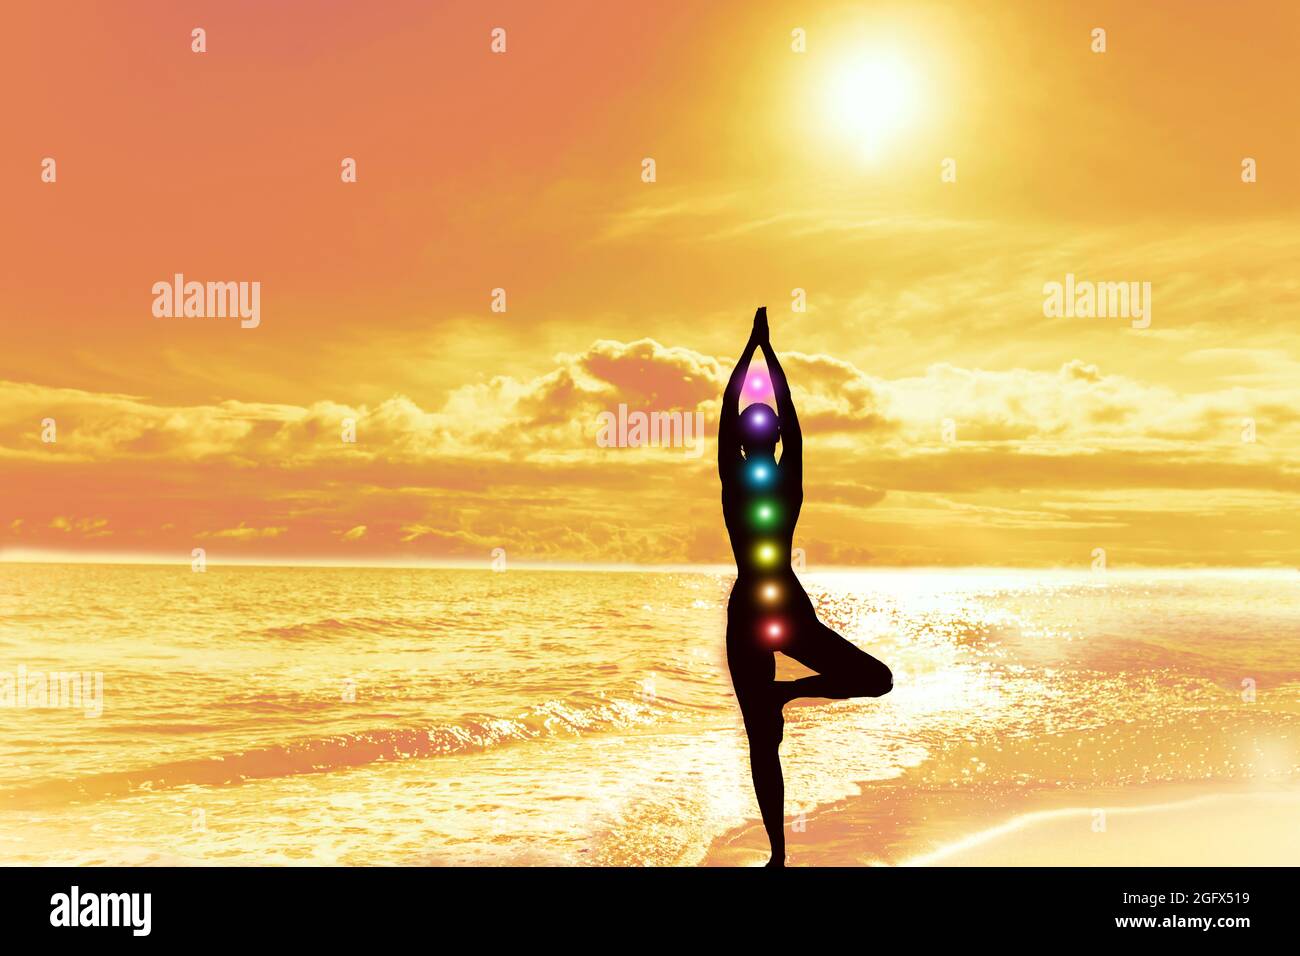 Sept chakras. Silhouette de femme dans la pose d'arbre de yoga. Soleil, ciel et mer. Concept de calme harmonie méditation santé mentale Banque D'Images